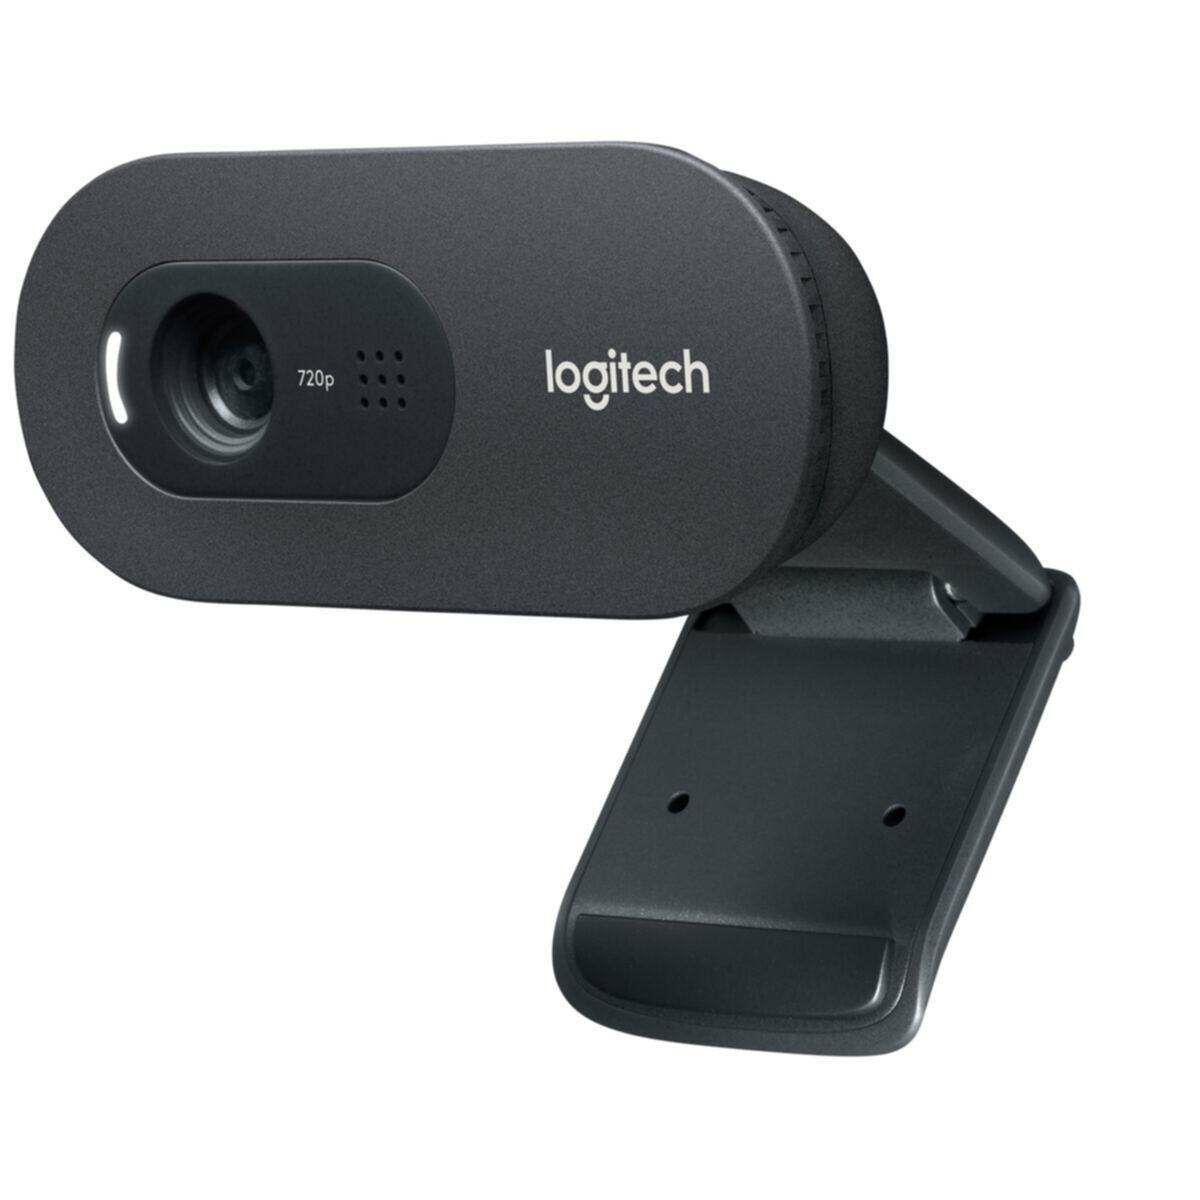 Kép 3/6 - Logitech webkamera C270 720p HD fekete EU (960-001063)